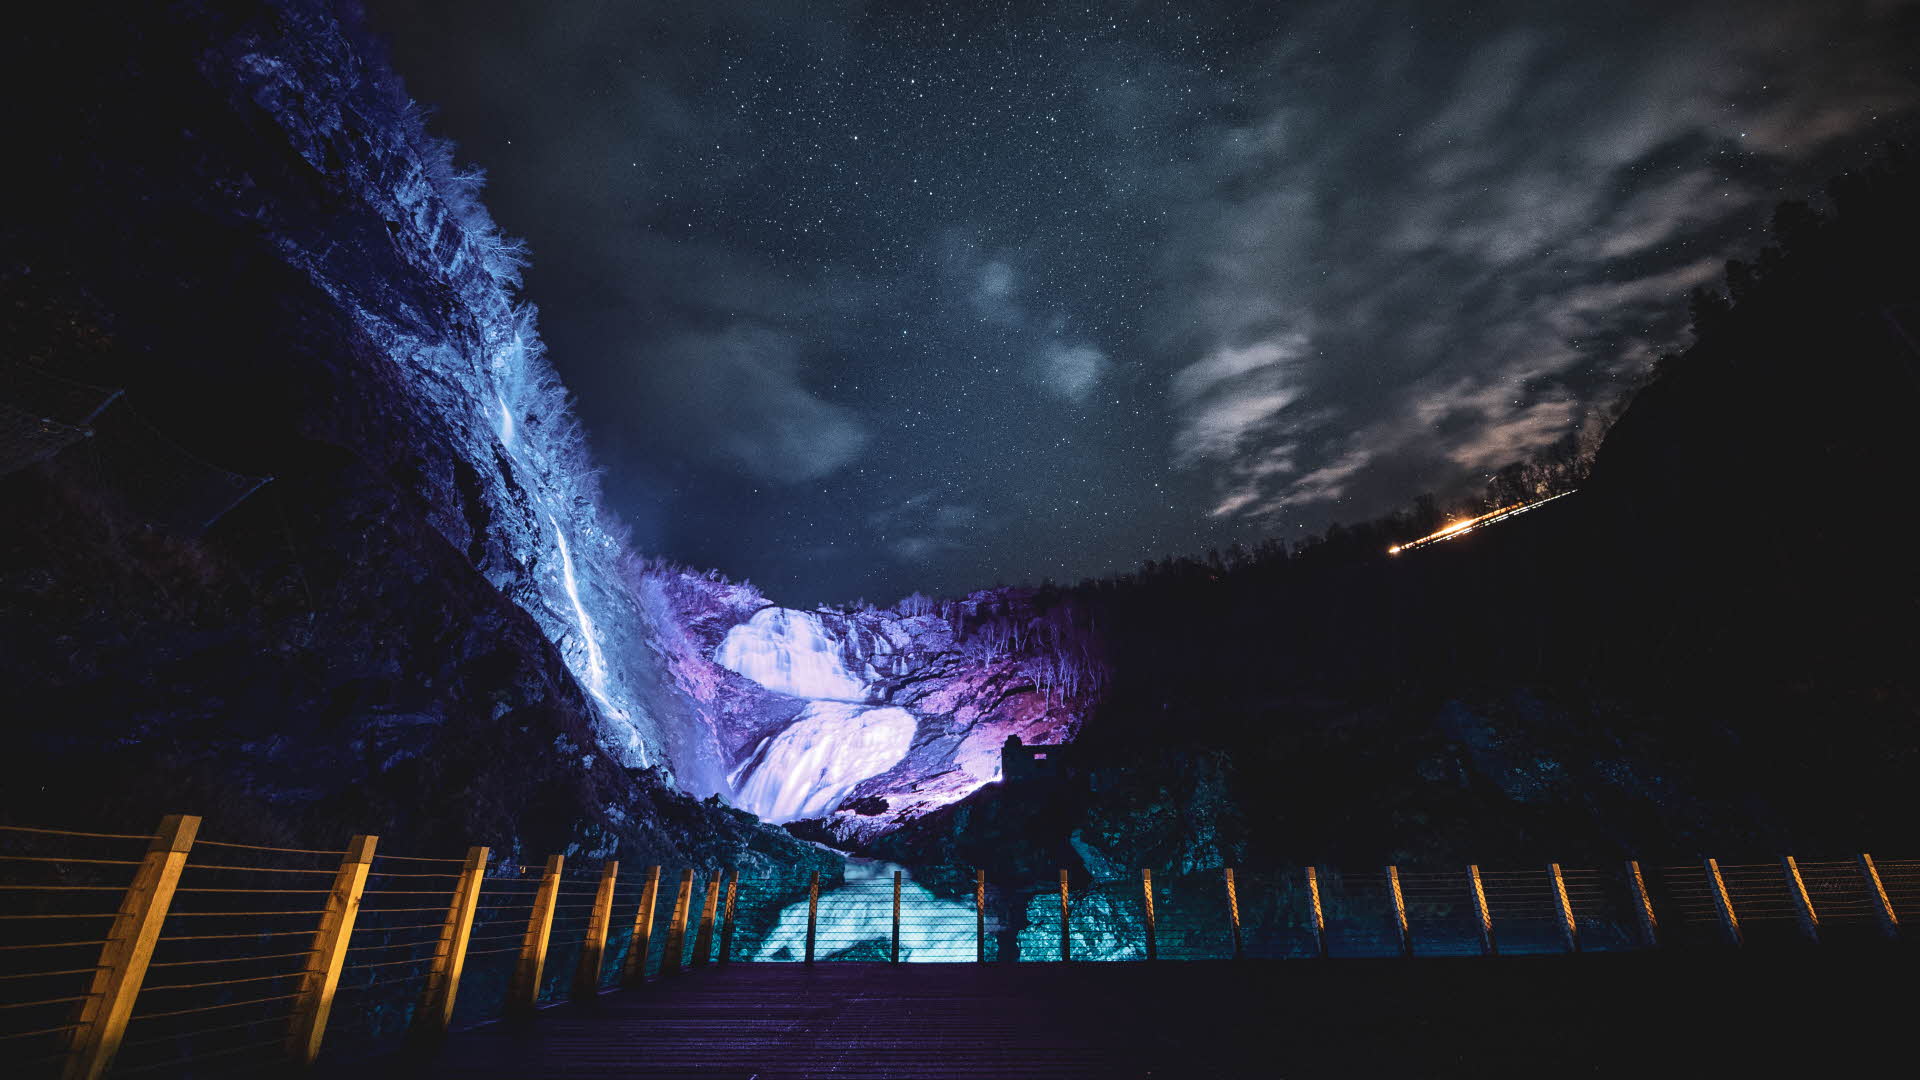 La cascada de Kjosfossen iluminada por luz púrpura en la oscuridad.